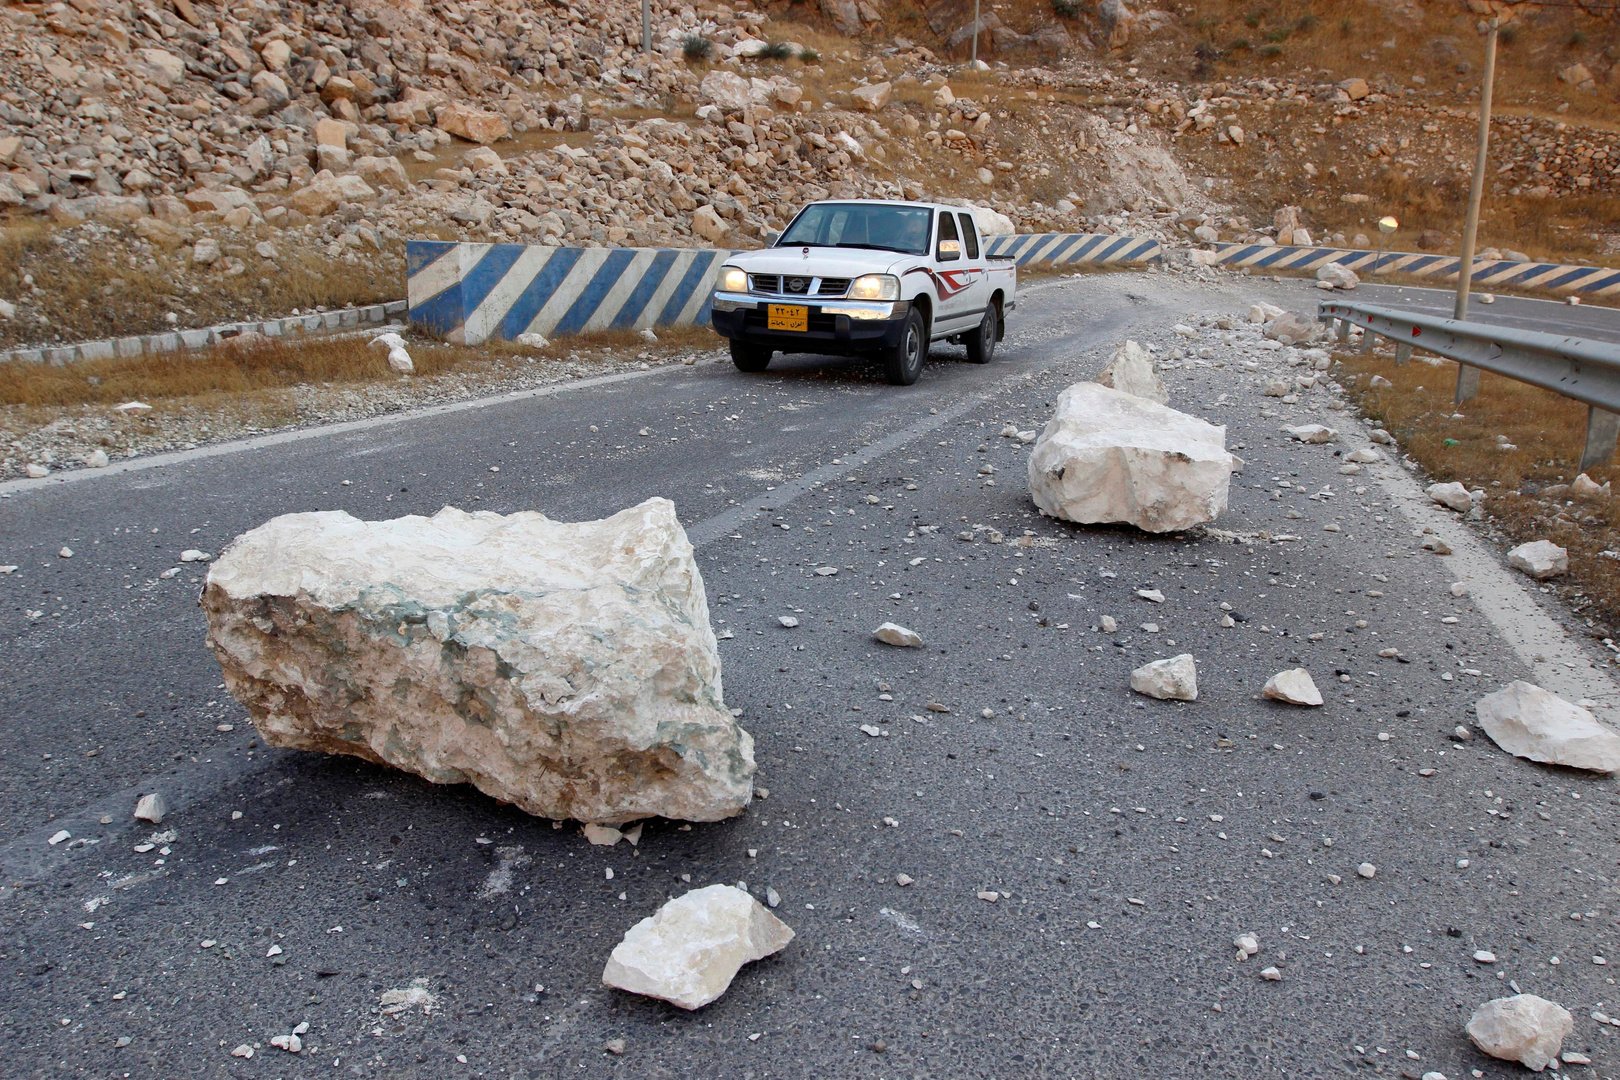 زلزال بقوة 5.4 درجة يضرب جنوب إيران